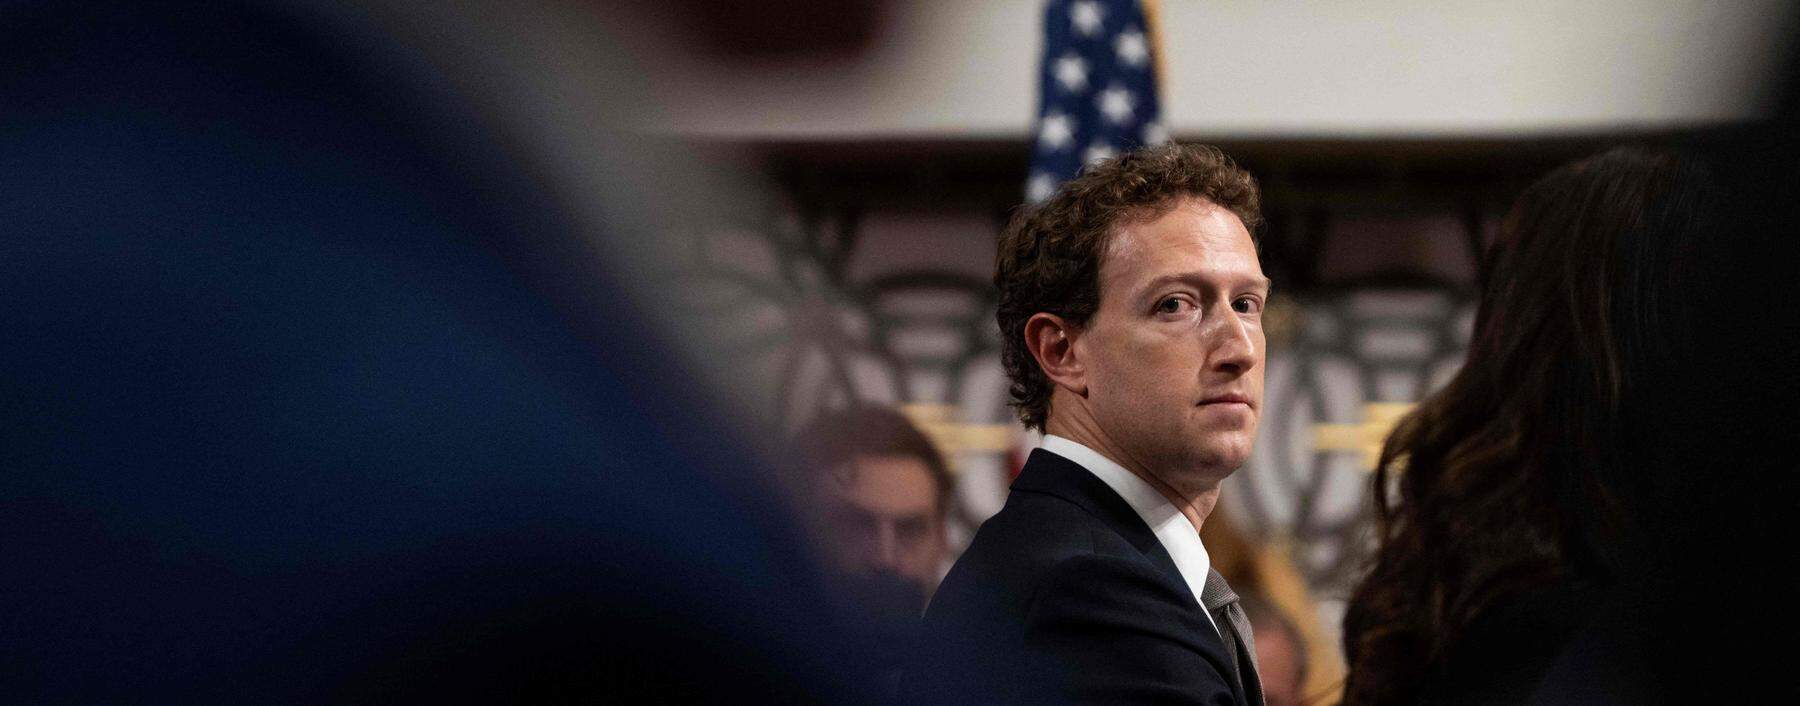 Die Anhörung im US-Senat war für Facebook-Gründer Mark Zuckerberg keine einfache.